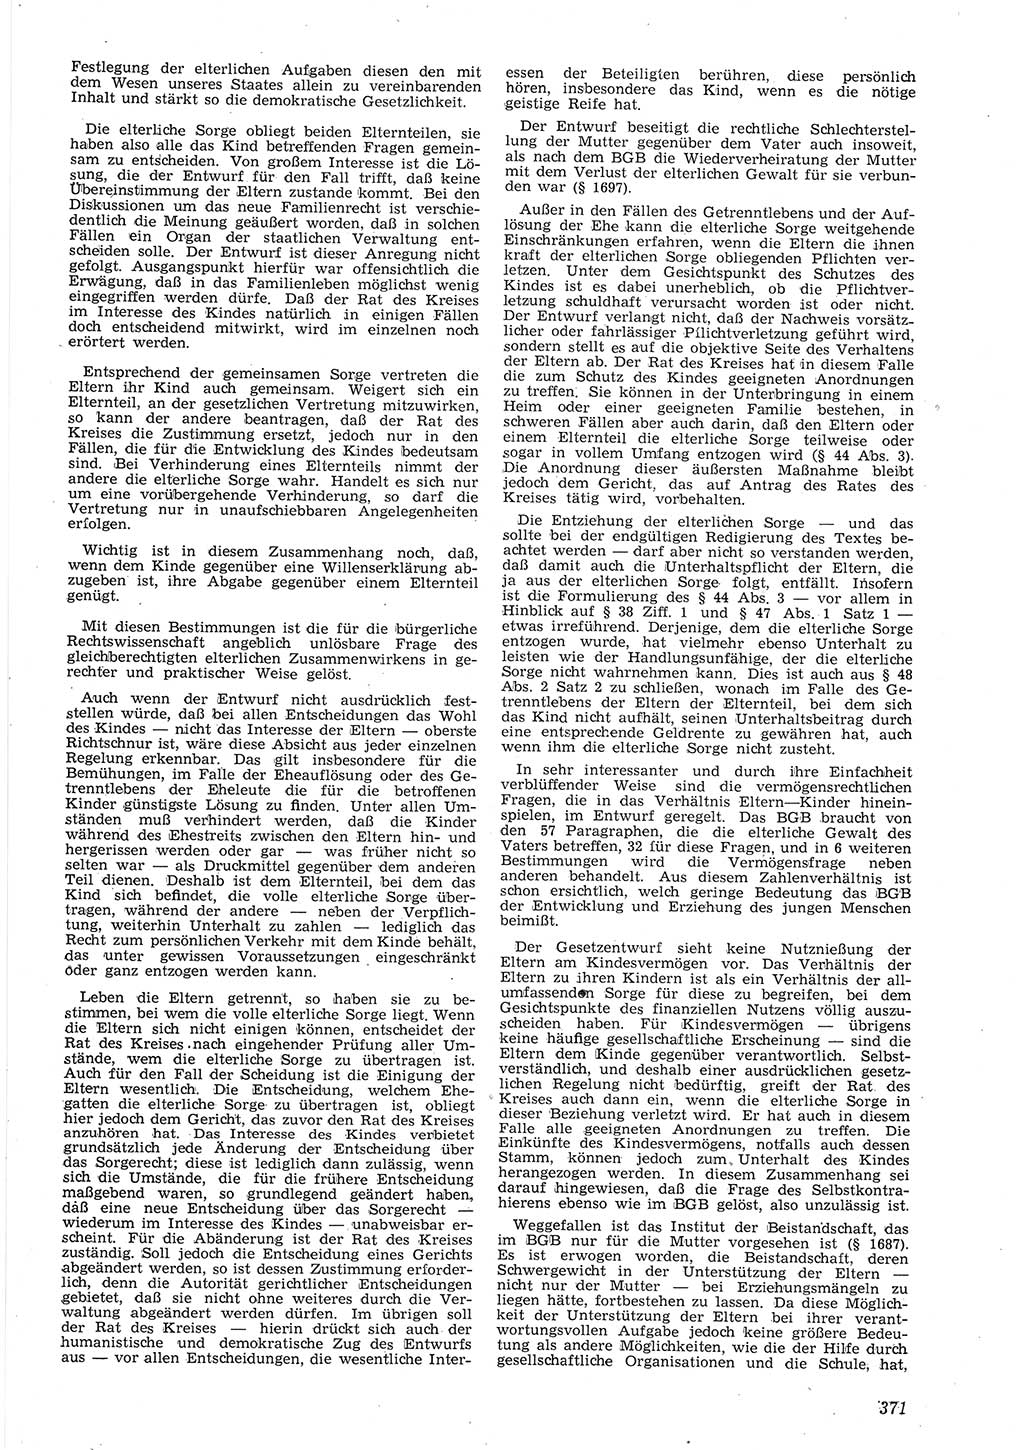 Neue Justiz (NJ), Zeitschrift für Recht und Rechtswissenschaft [Deutsche Demokratische Republik (DDR)], 8. Jahrgang 1954, Seite 371 (NJ DDR 1954, S. 371)